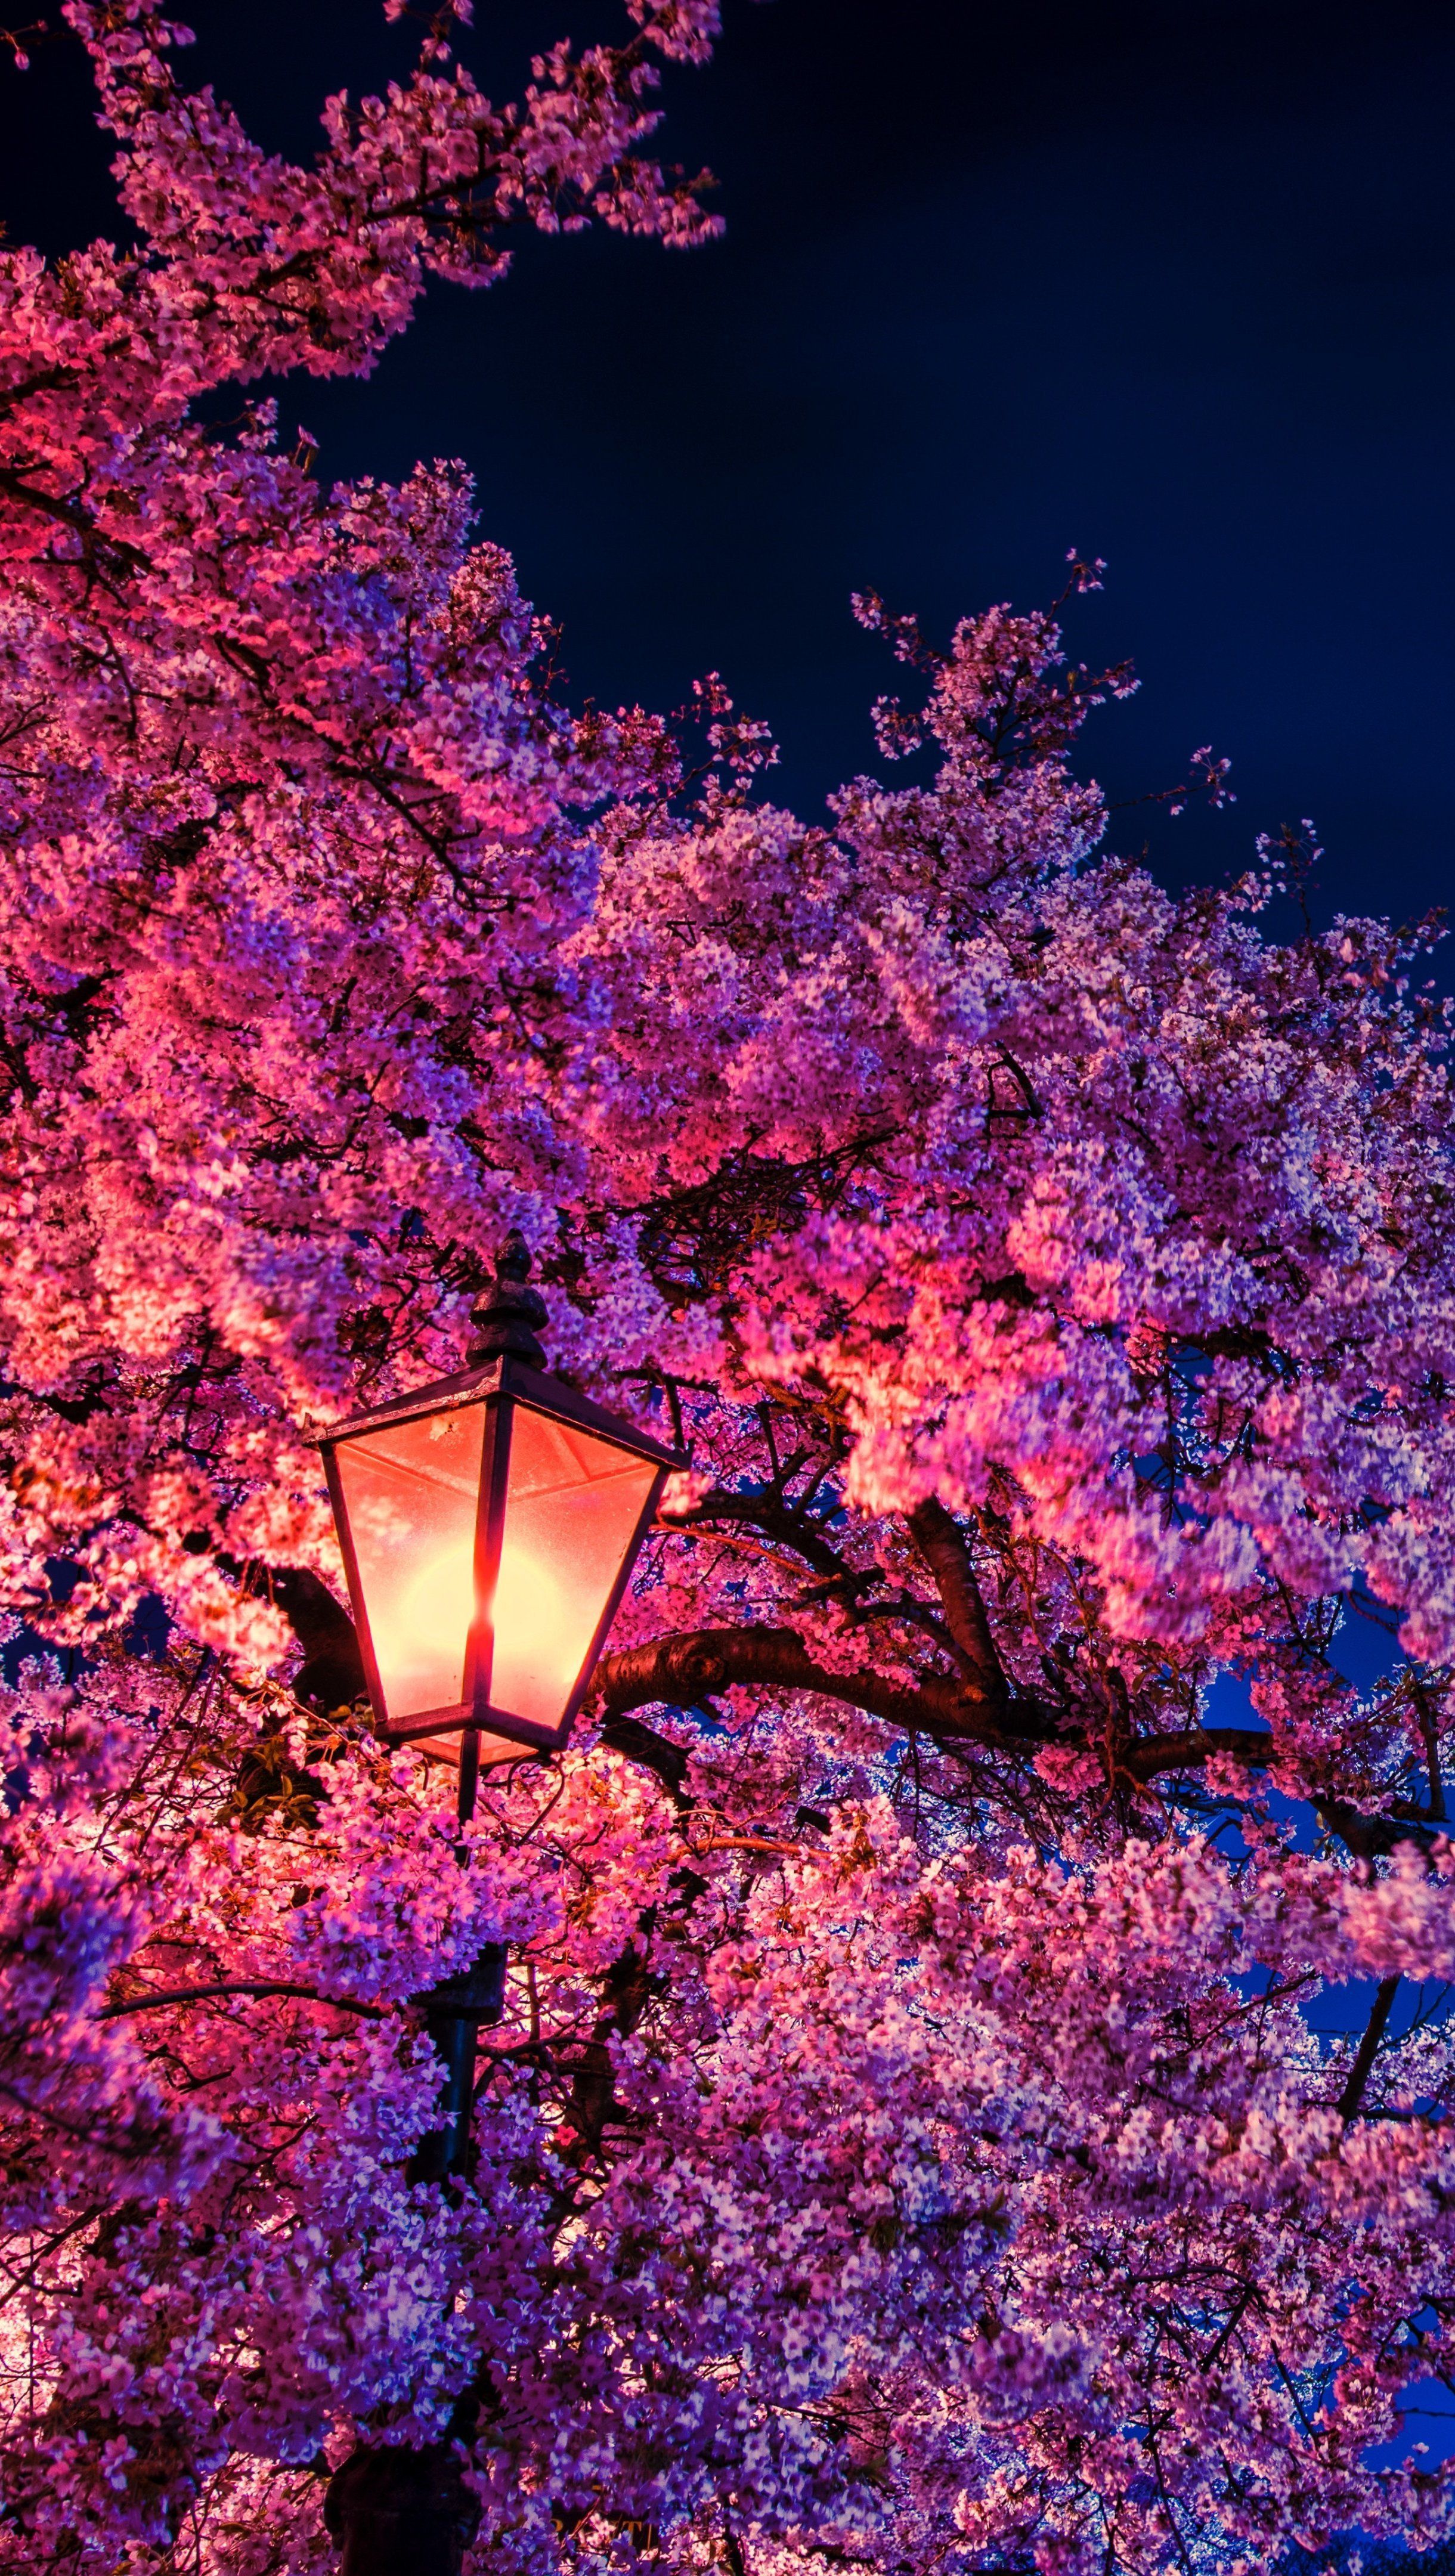 Cherry blossom at night light Wallpaper 8k Ultra HD